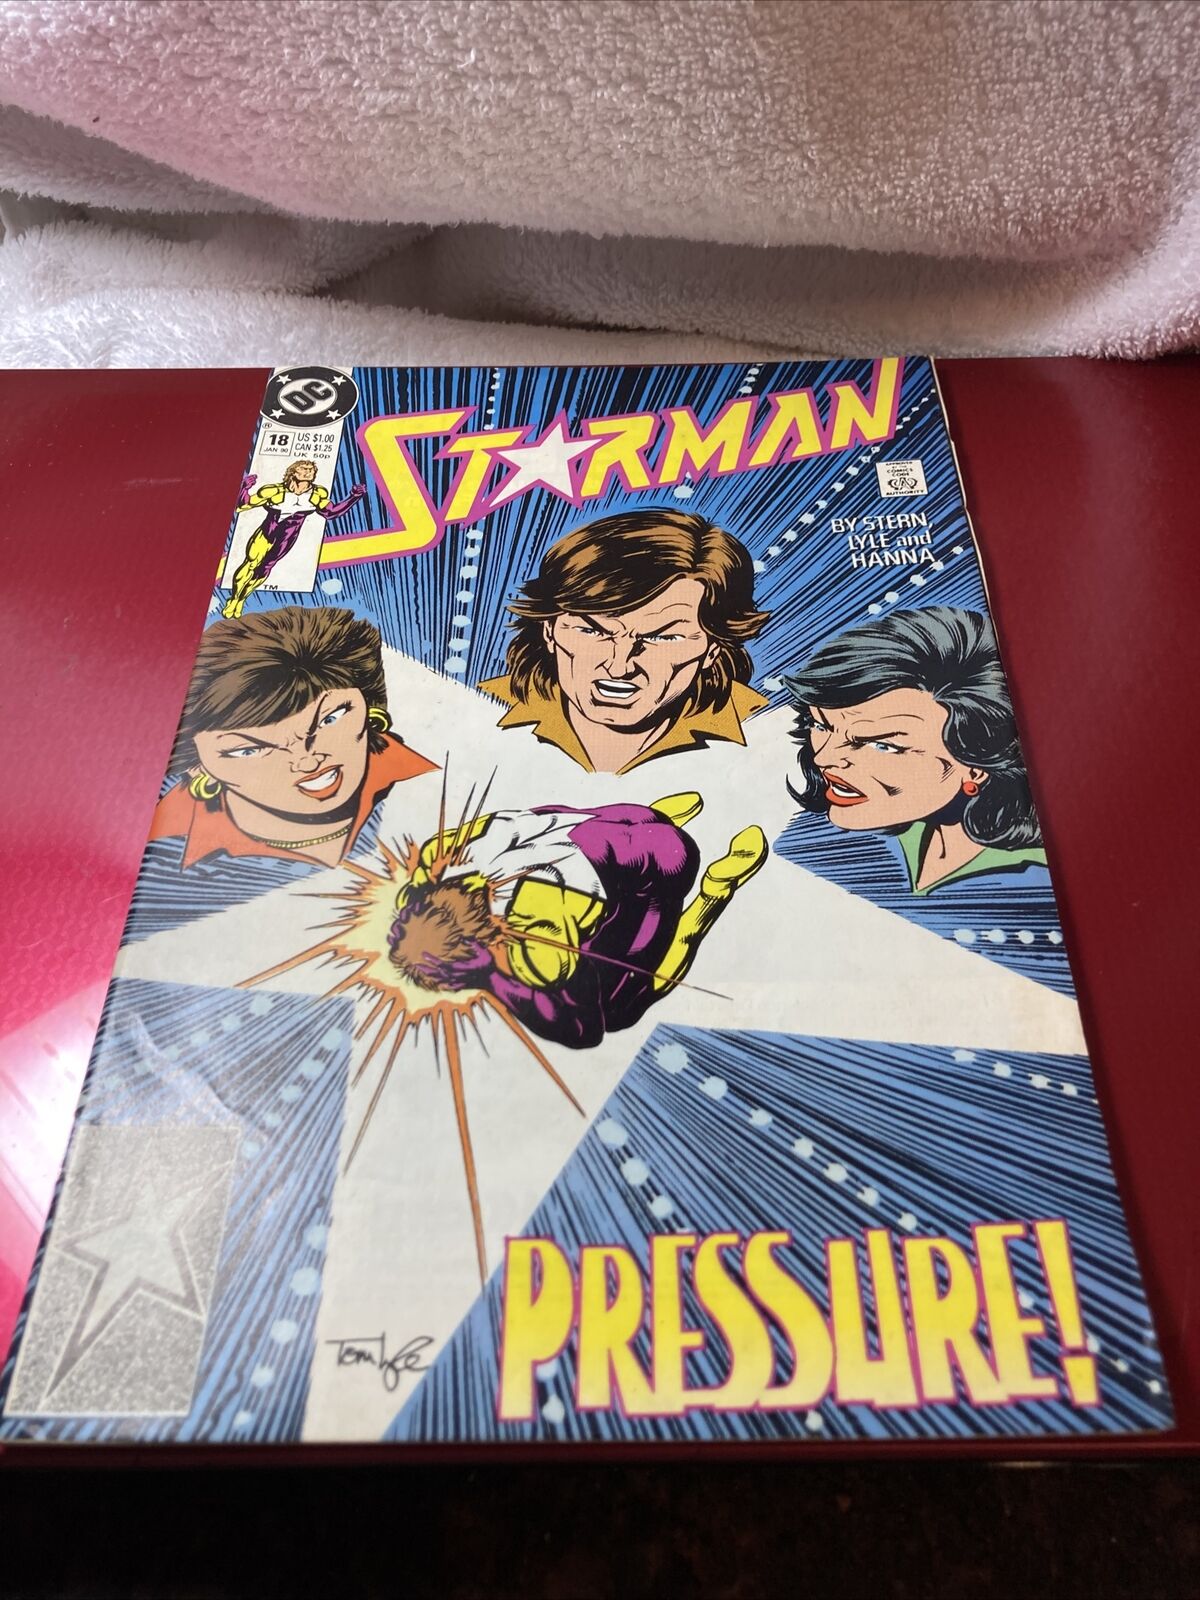 Starman #18 1990 DC Comic Pressure very good condition